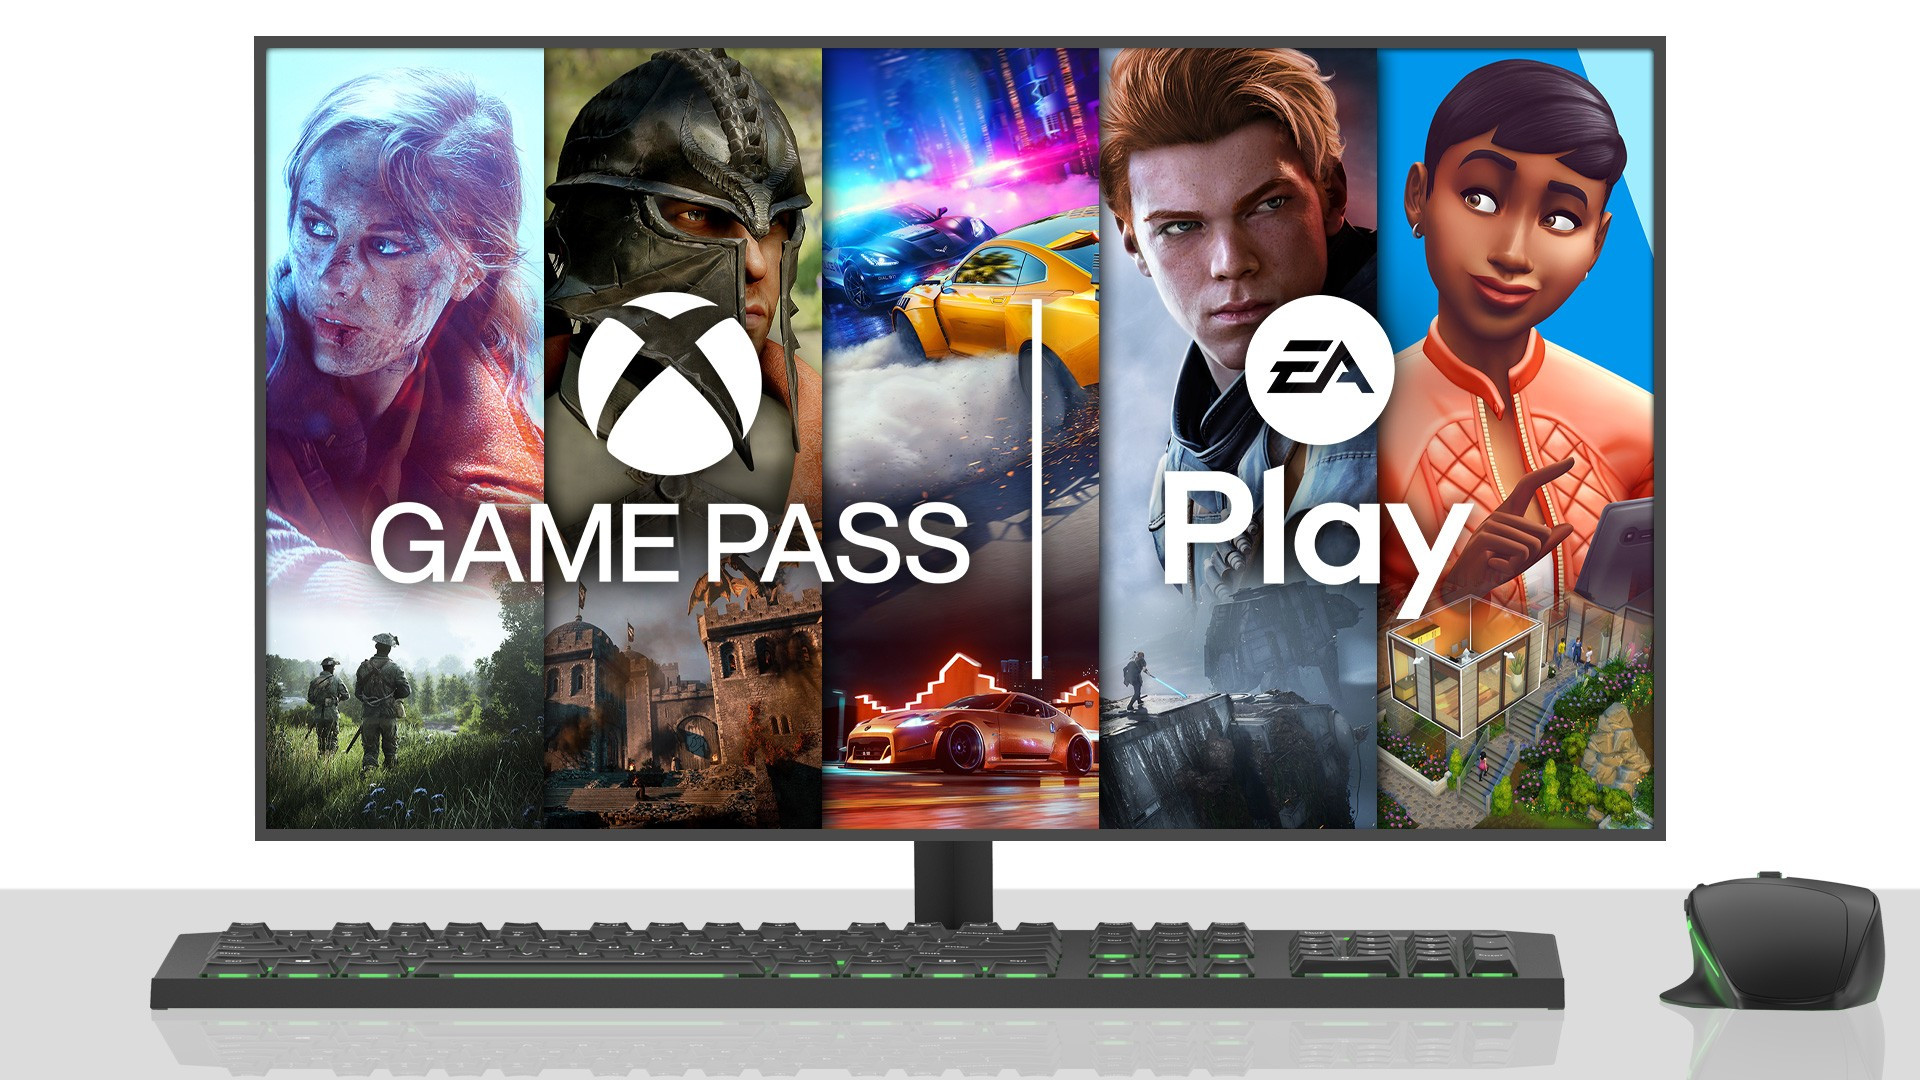 Xbox Game Pass: jogos e vantagens que chegam em julho - Giz Brasil